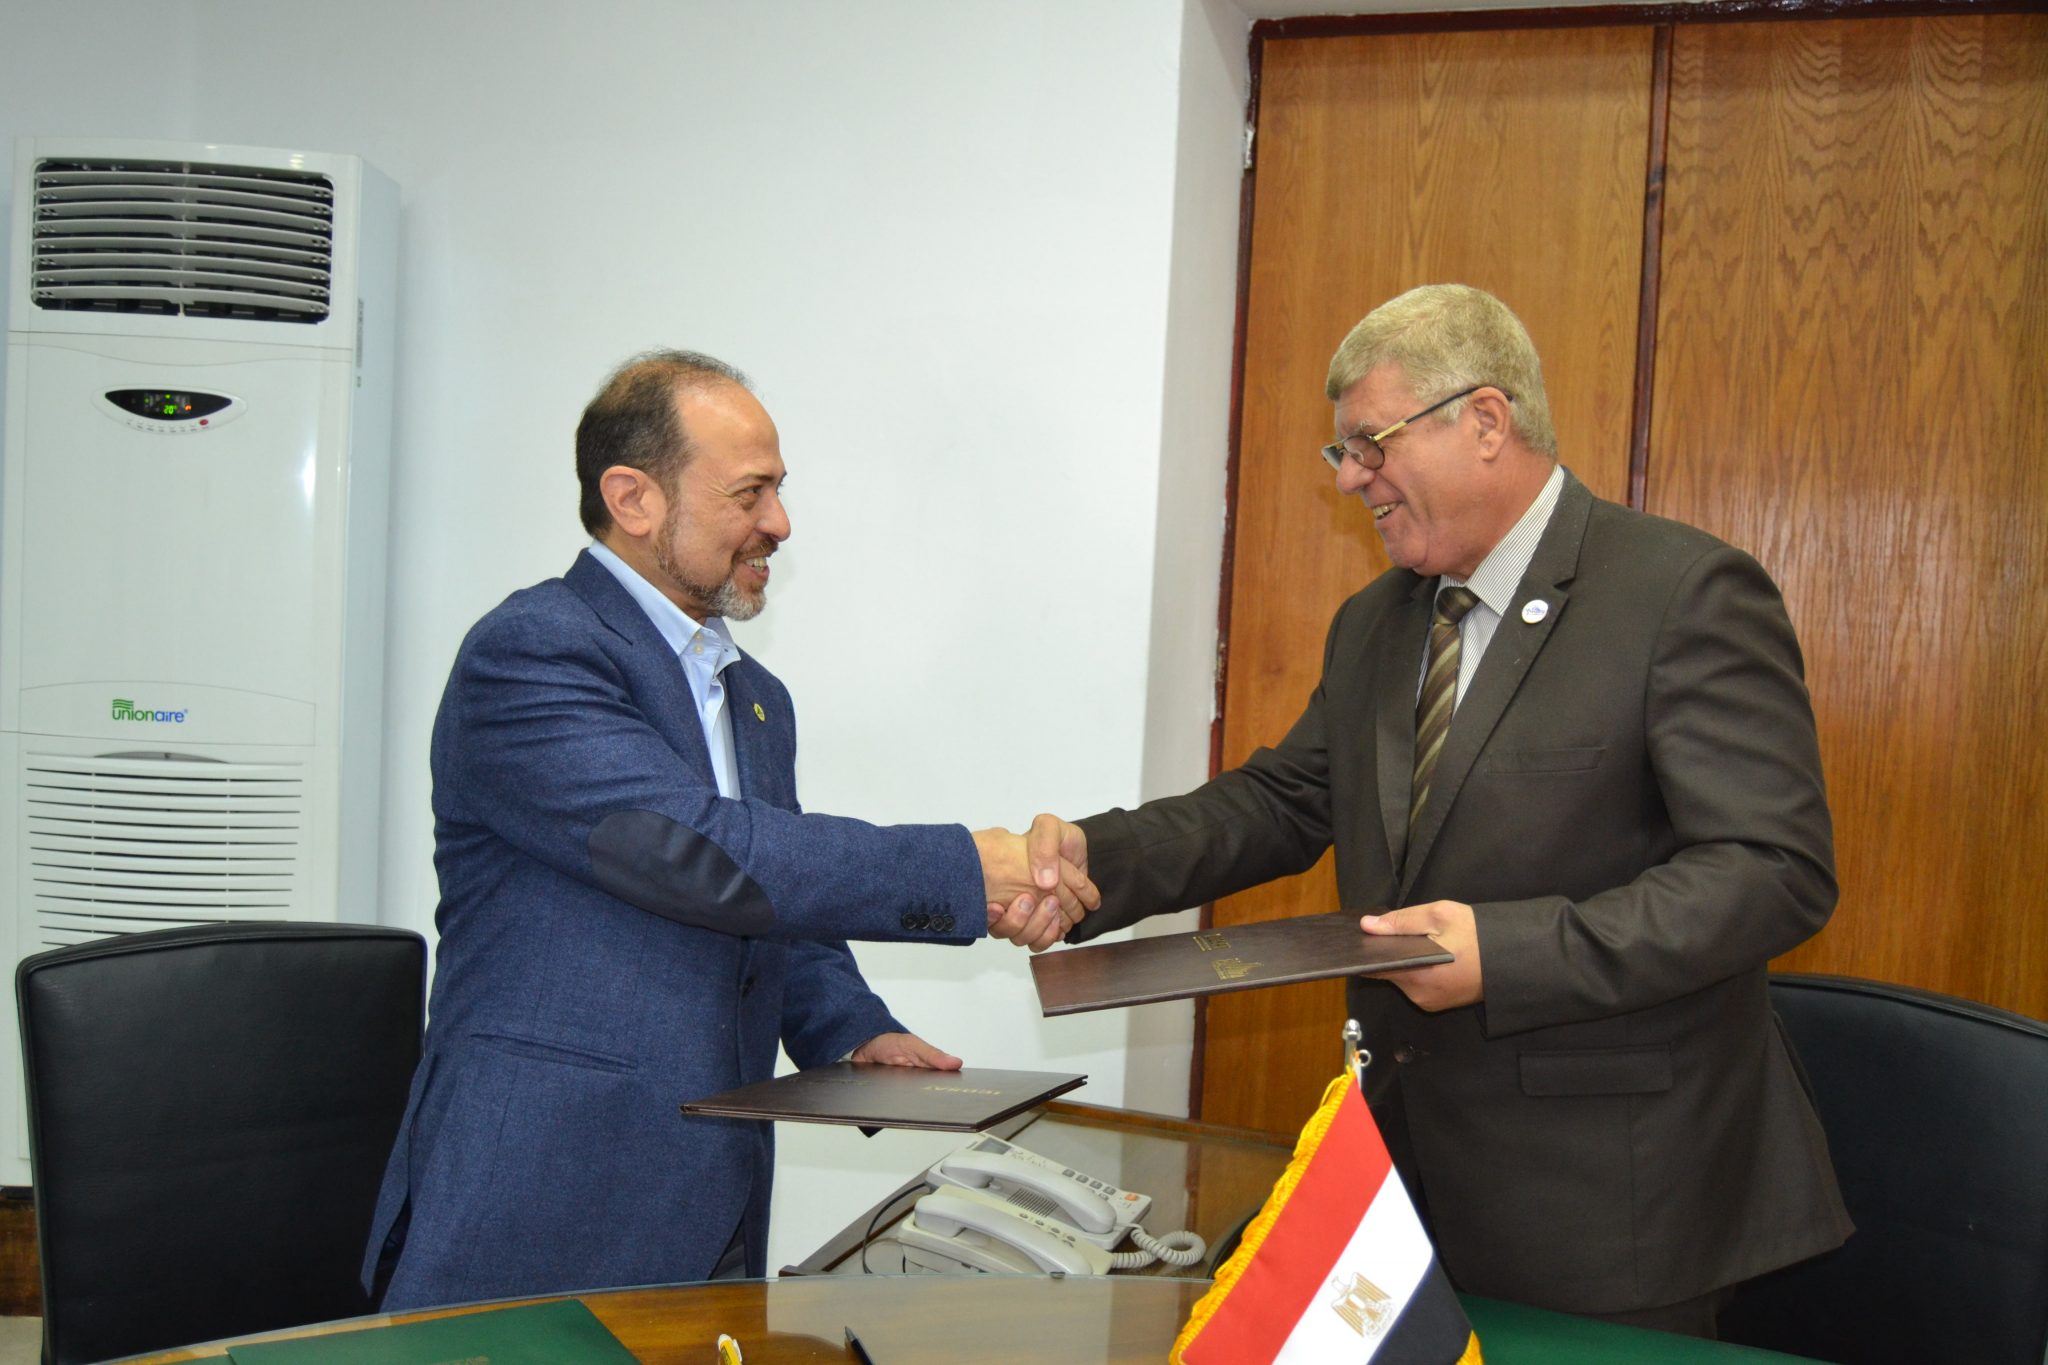   هيئة المطابع الأميرية توقع بروتوكولي تعاون لإنتاج أحبار الطباعة المؤمنة لأول مرة في مصر